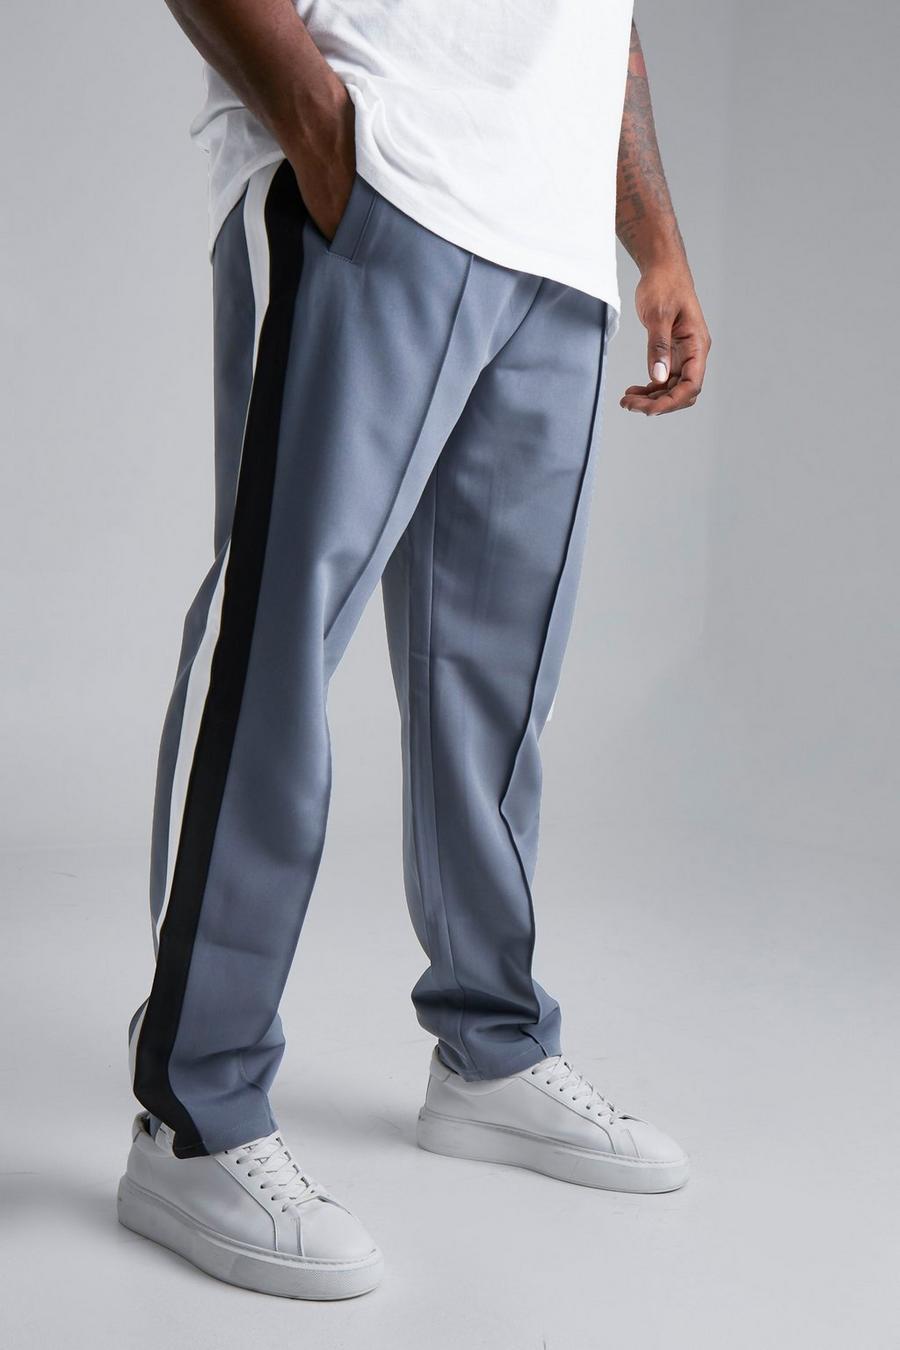 אפור grigio מכנסיים מחויטים בסגנון נבחרת ספורט למידות גדולות